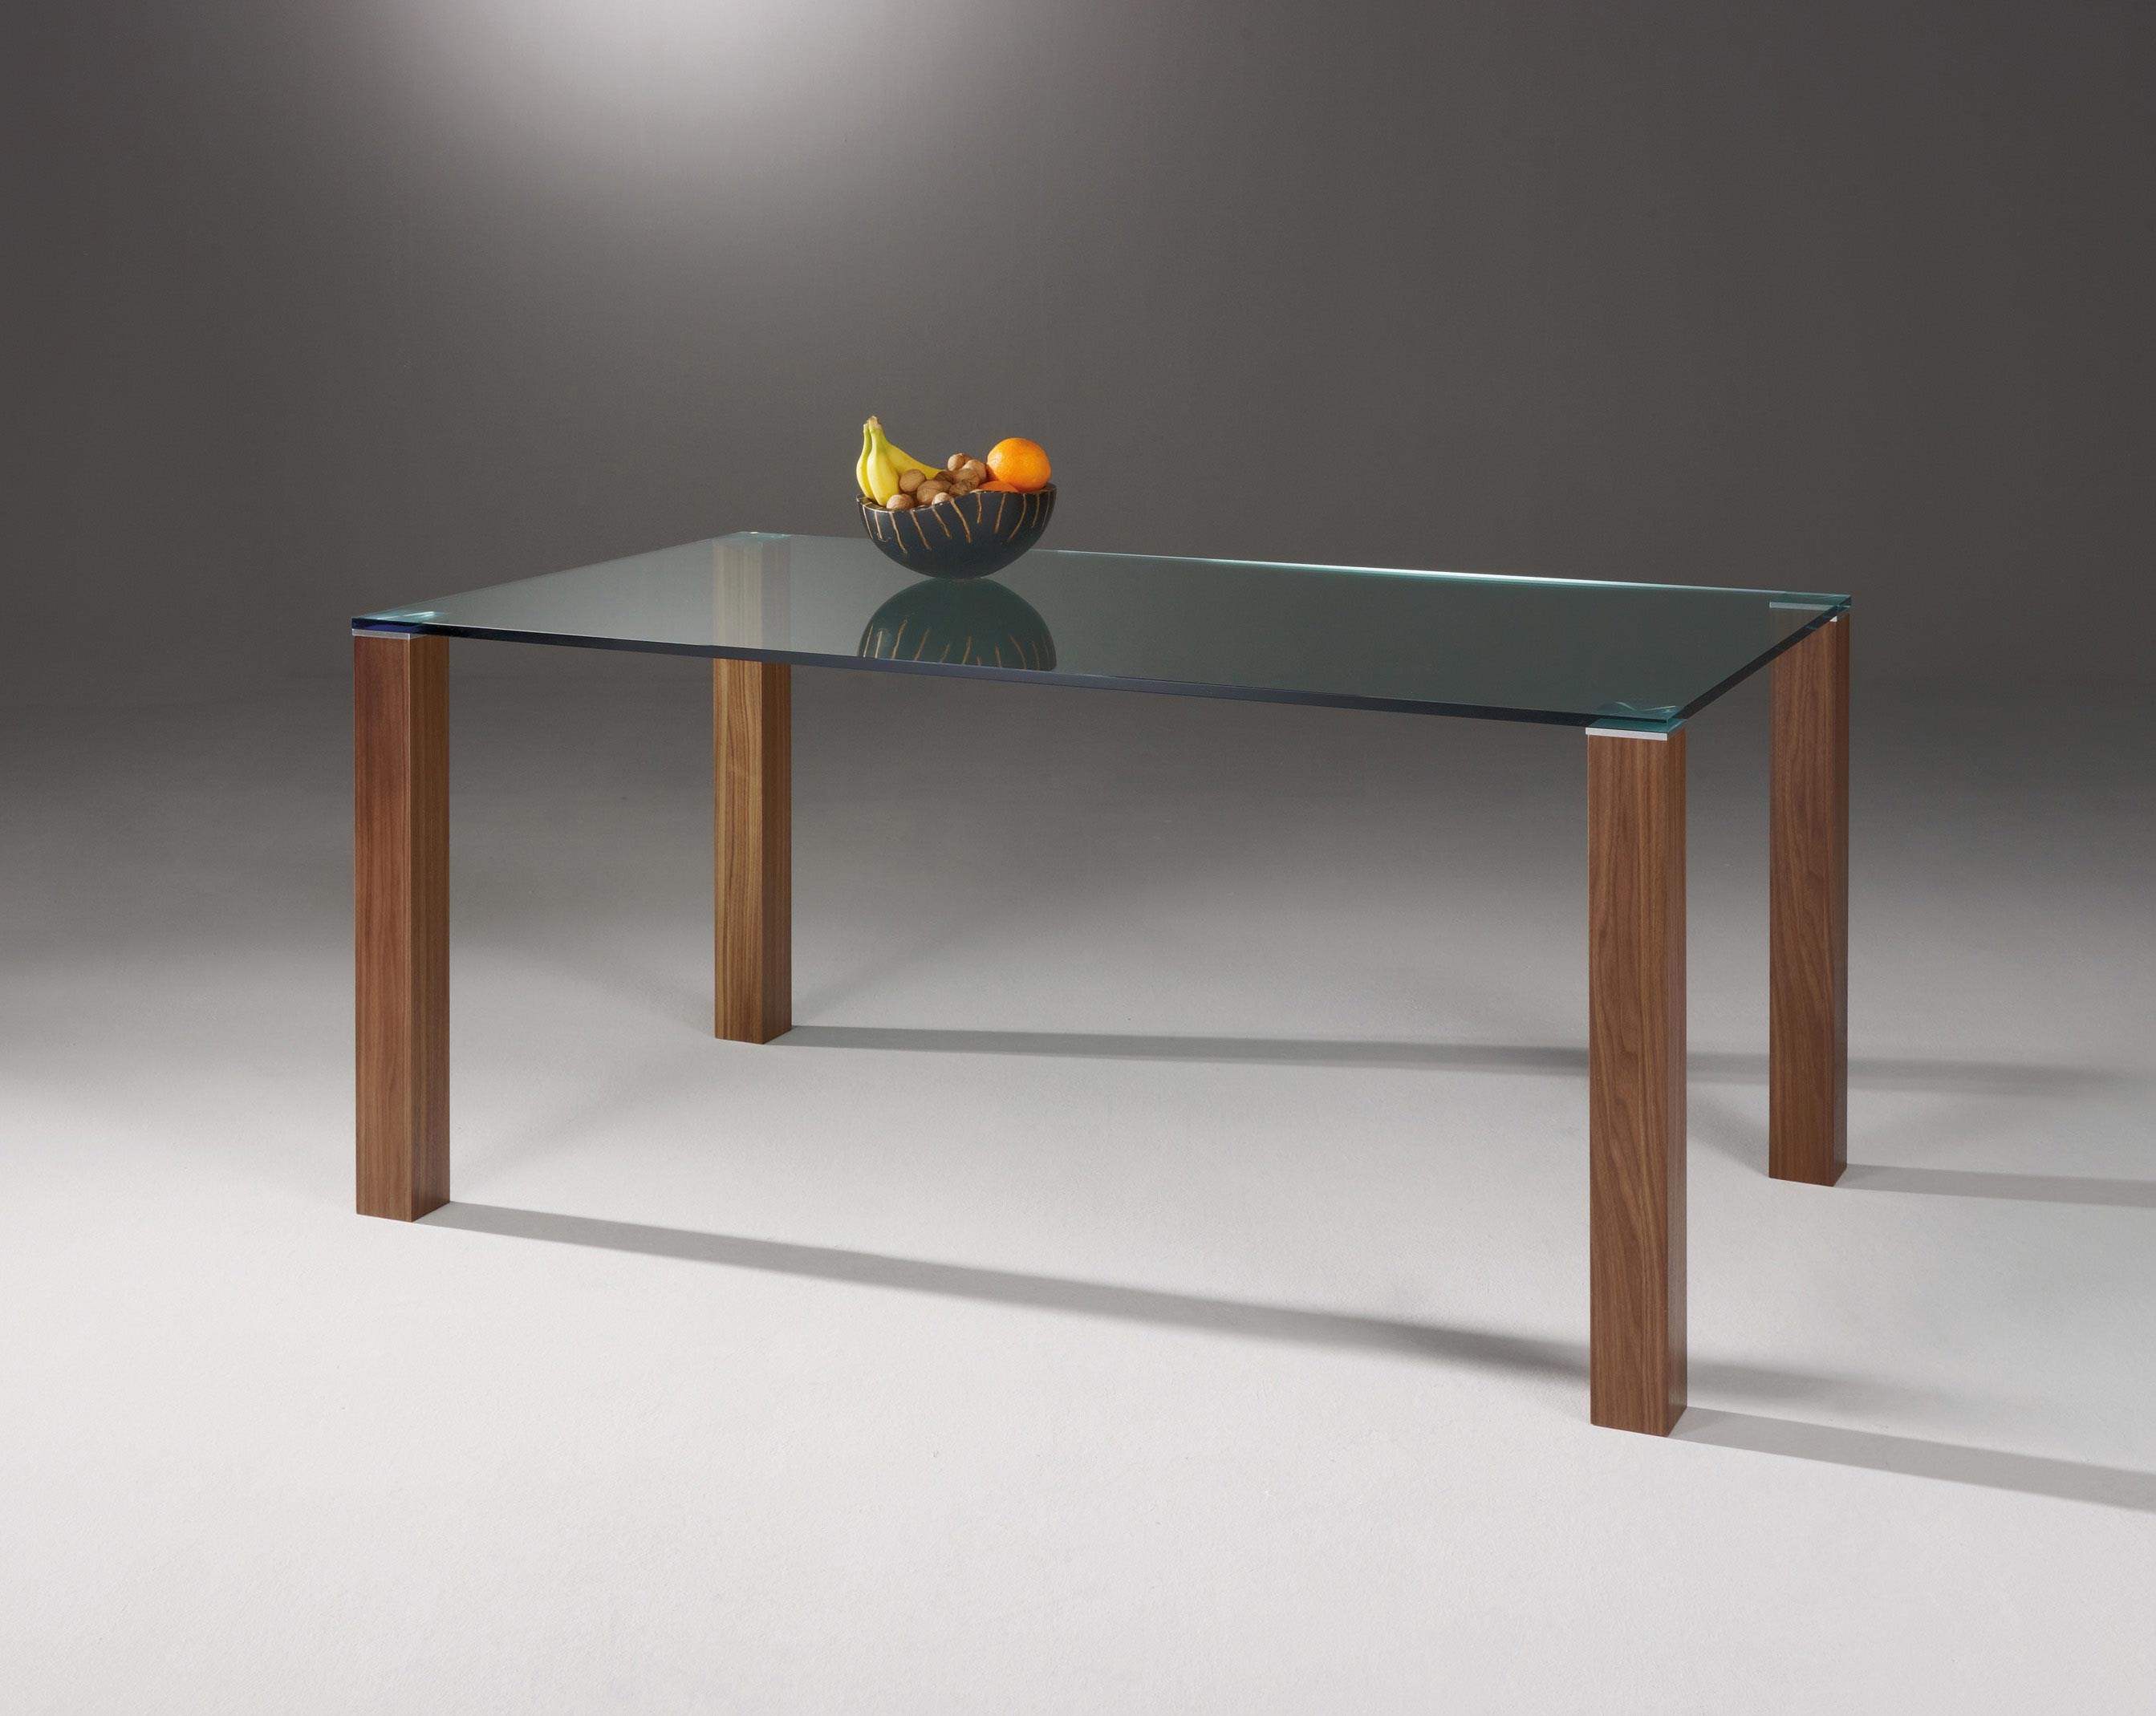 Glastisch mit Holzfüßen REMUS von DREIECK DESIGN: RM 1672 - FLOATGLAS klar + Tischfüße Nussbaum